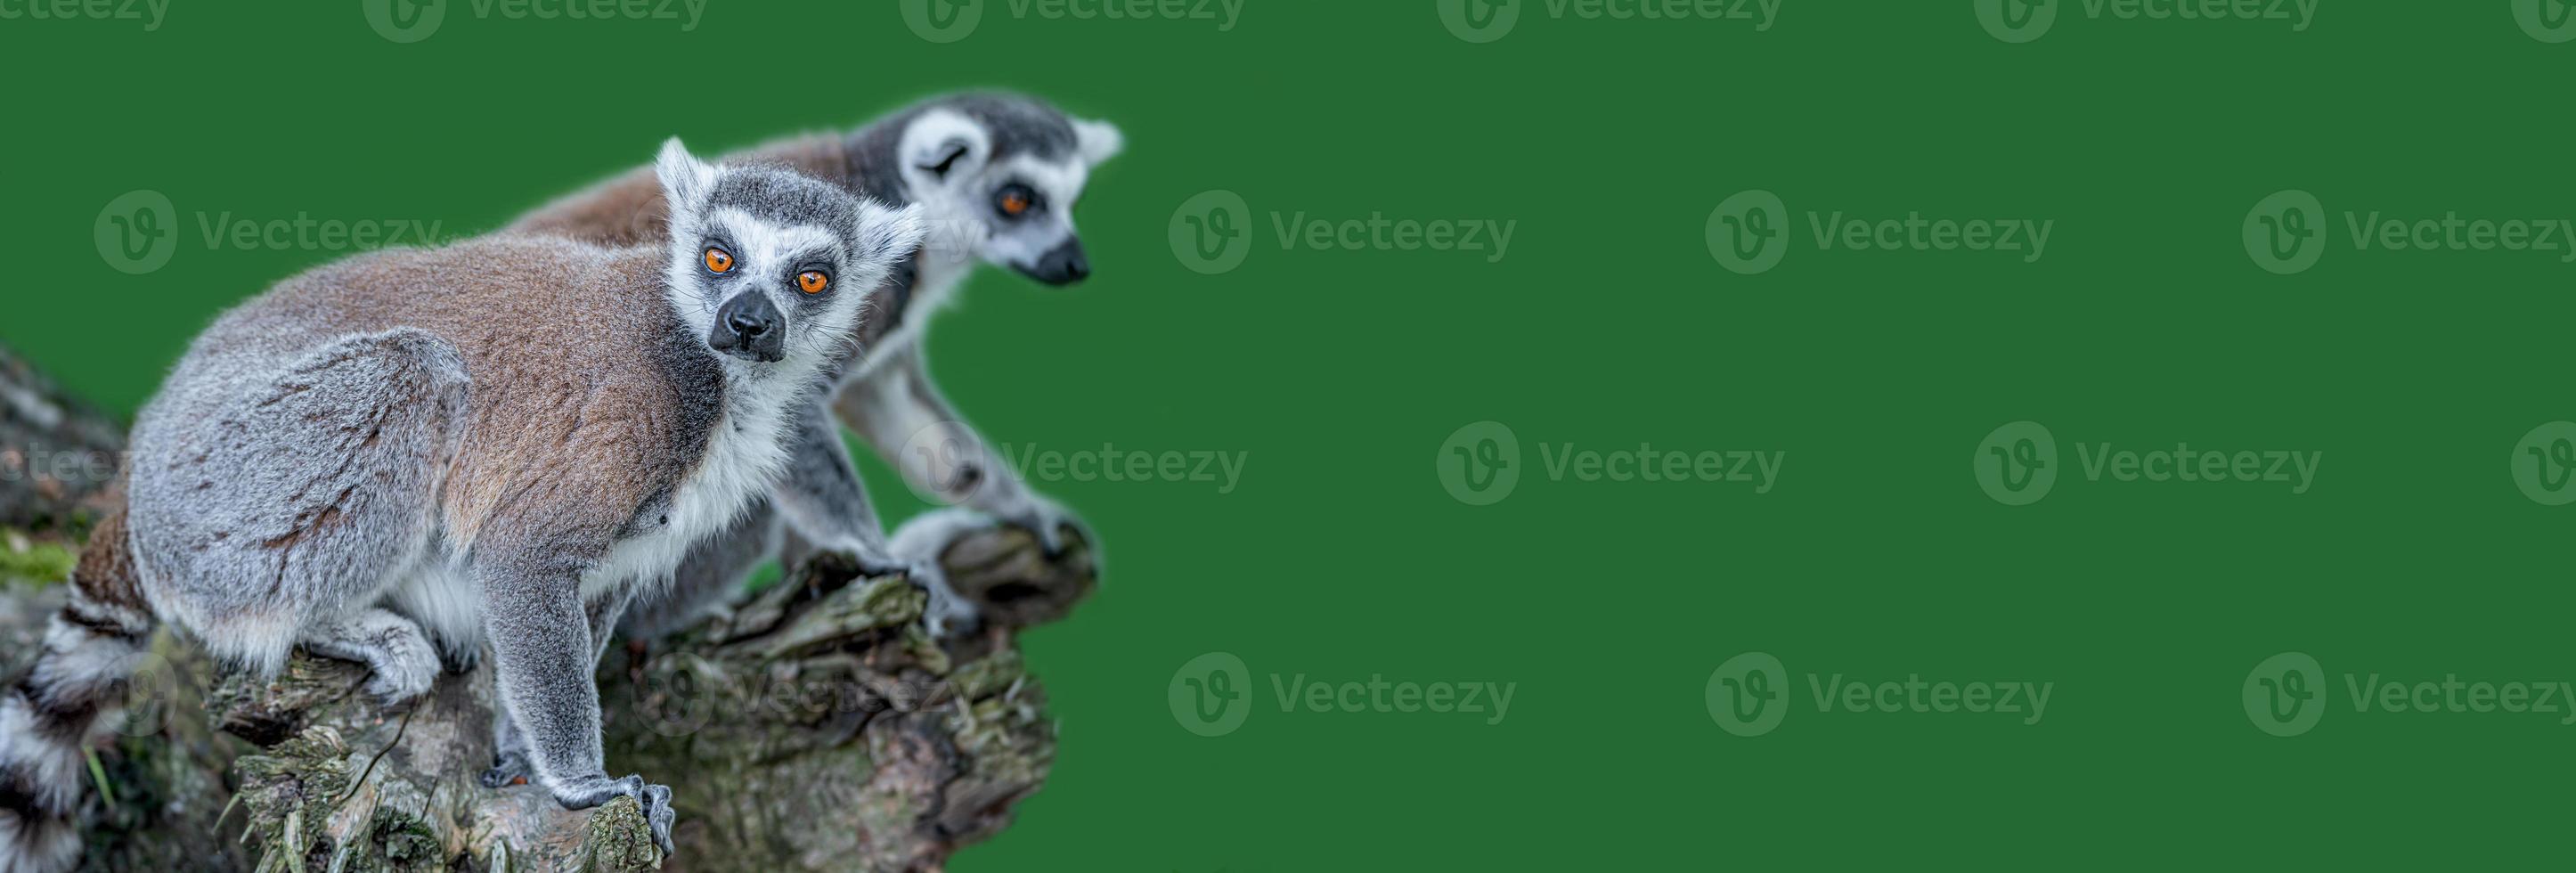 pancarta con un retrato de divertidos lémures de Madagascar de cola anillada disfrutando del verano, de cerca, detalles, con espacio de copia y fondo verde sólido. concepto de biodiversidad y conservación de la vida silvestre. foto